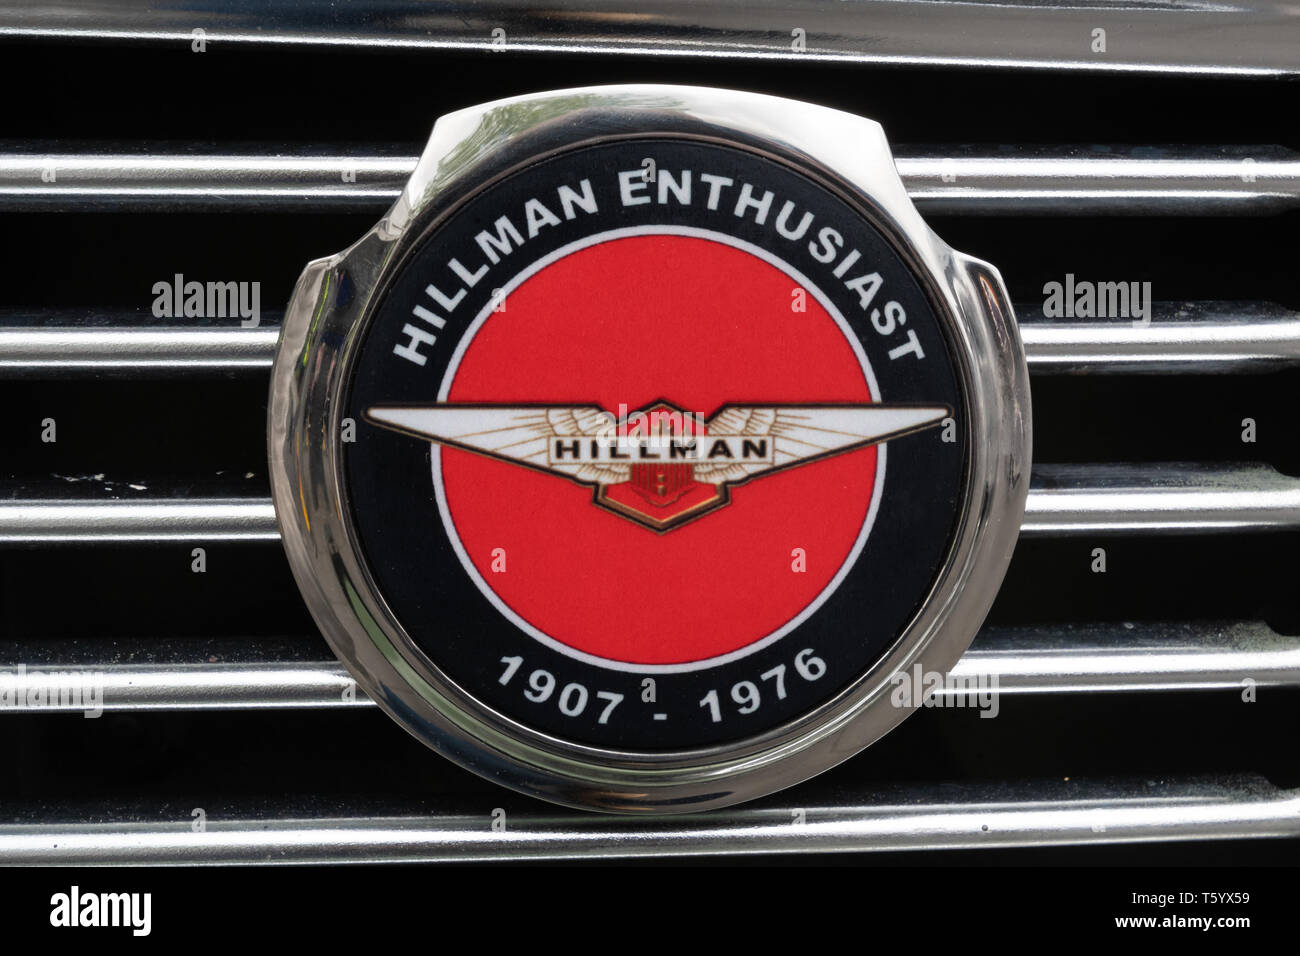 Emblème Hillman pour les passionnés sur une voiture lors d'un salon automobile classique au Royaume-Uni.Remarque : vous achetez une photo du badge de voiture. Banque D'Images